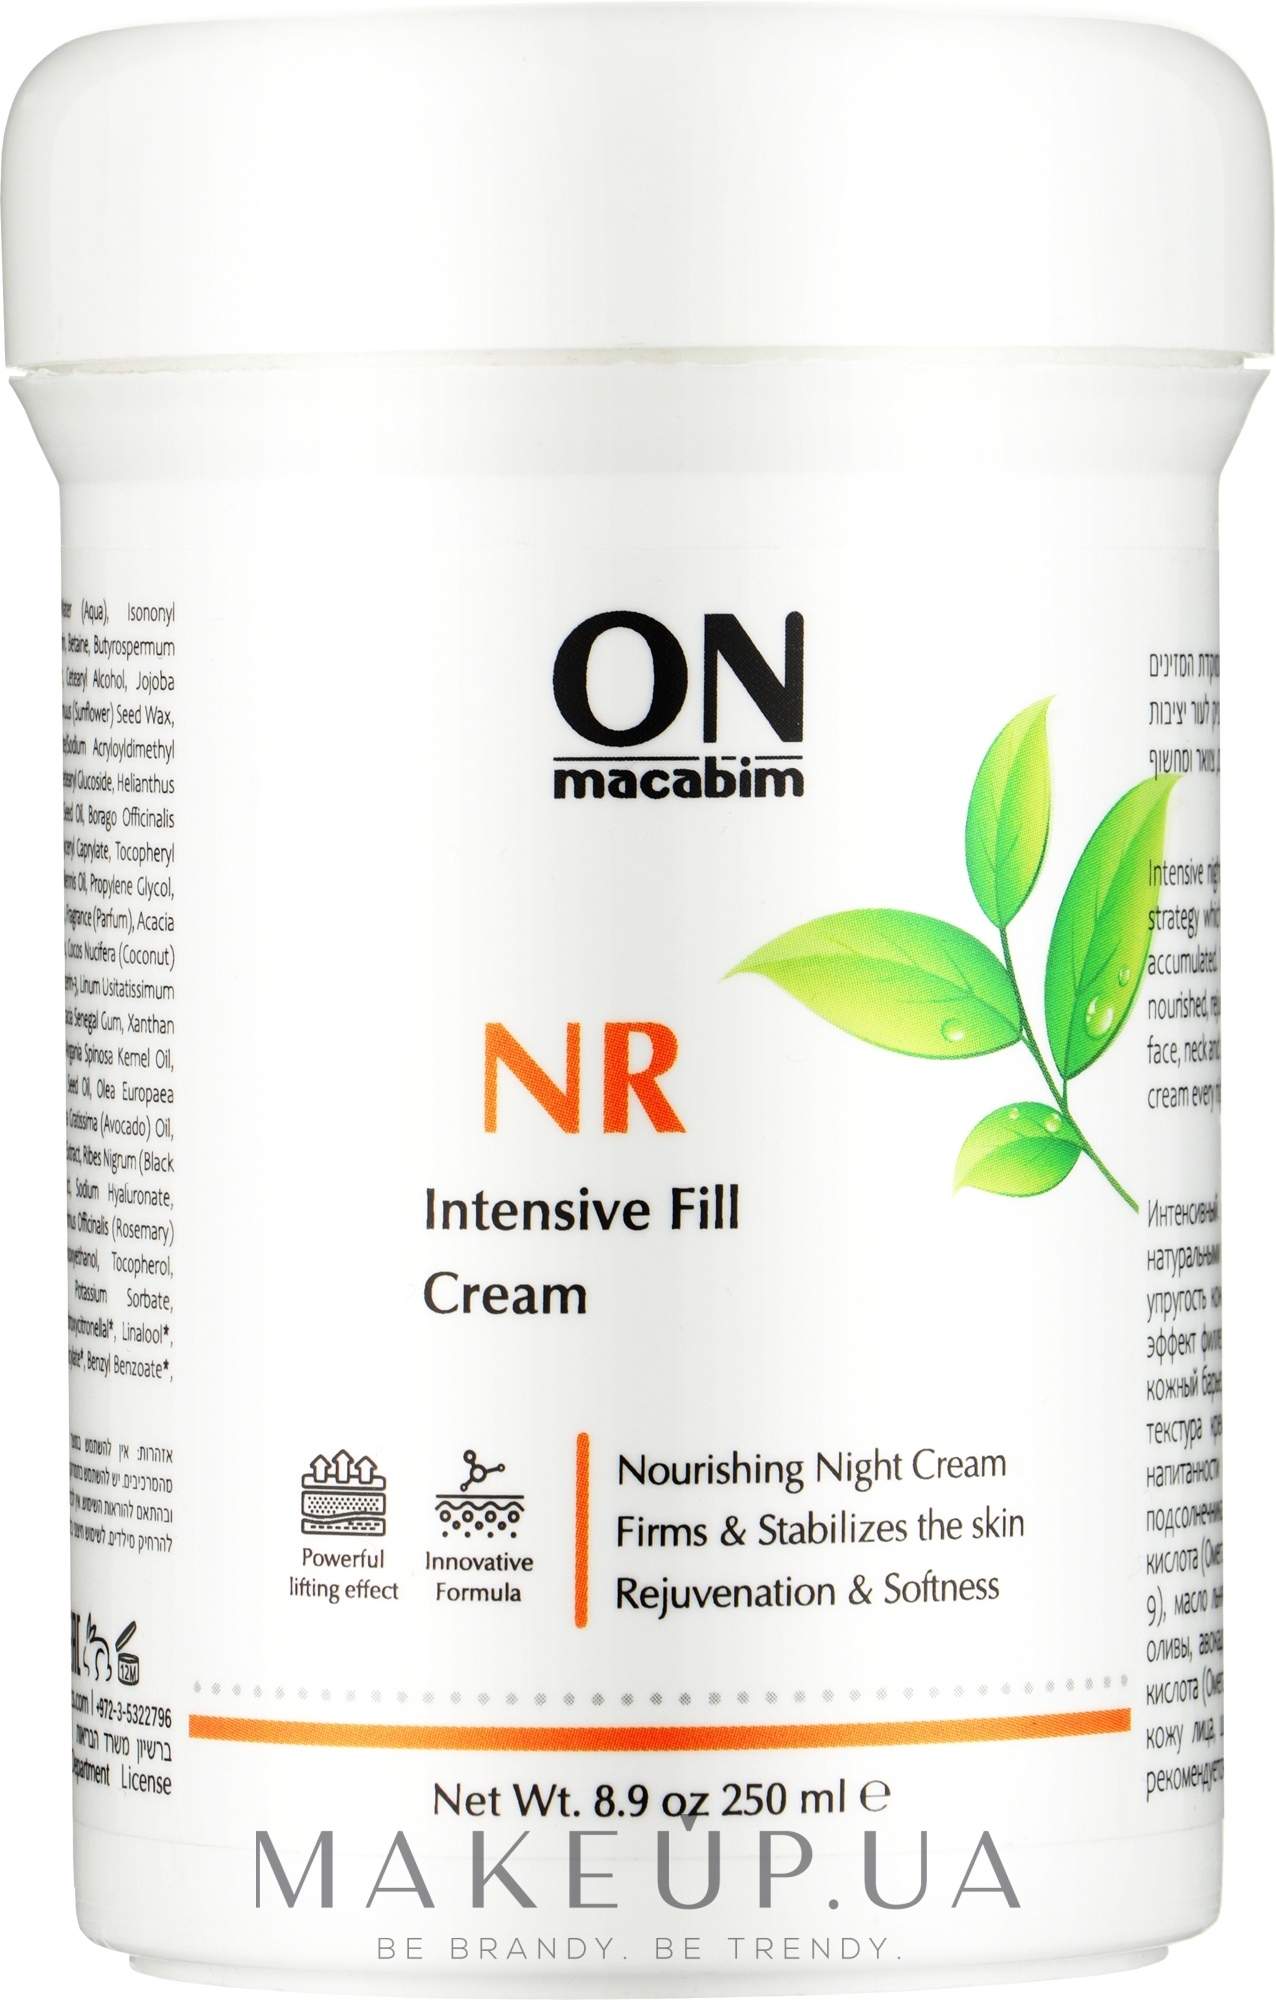 Інтенсивний крем з ліфтинг-ефектом - Onmacabim NR Intensive Fill Cream — фото 250ml